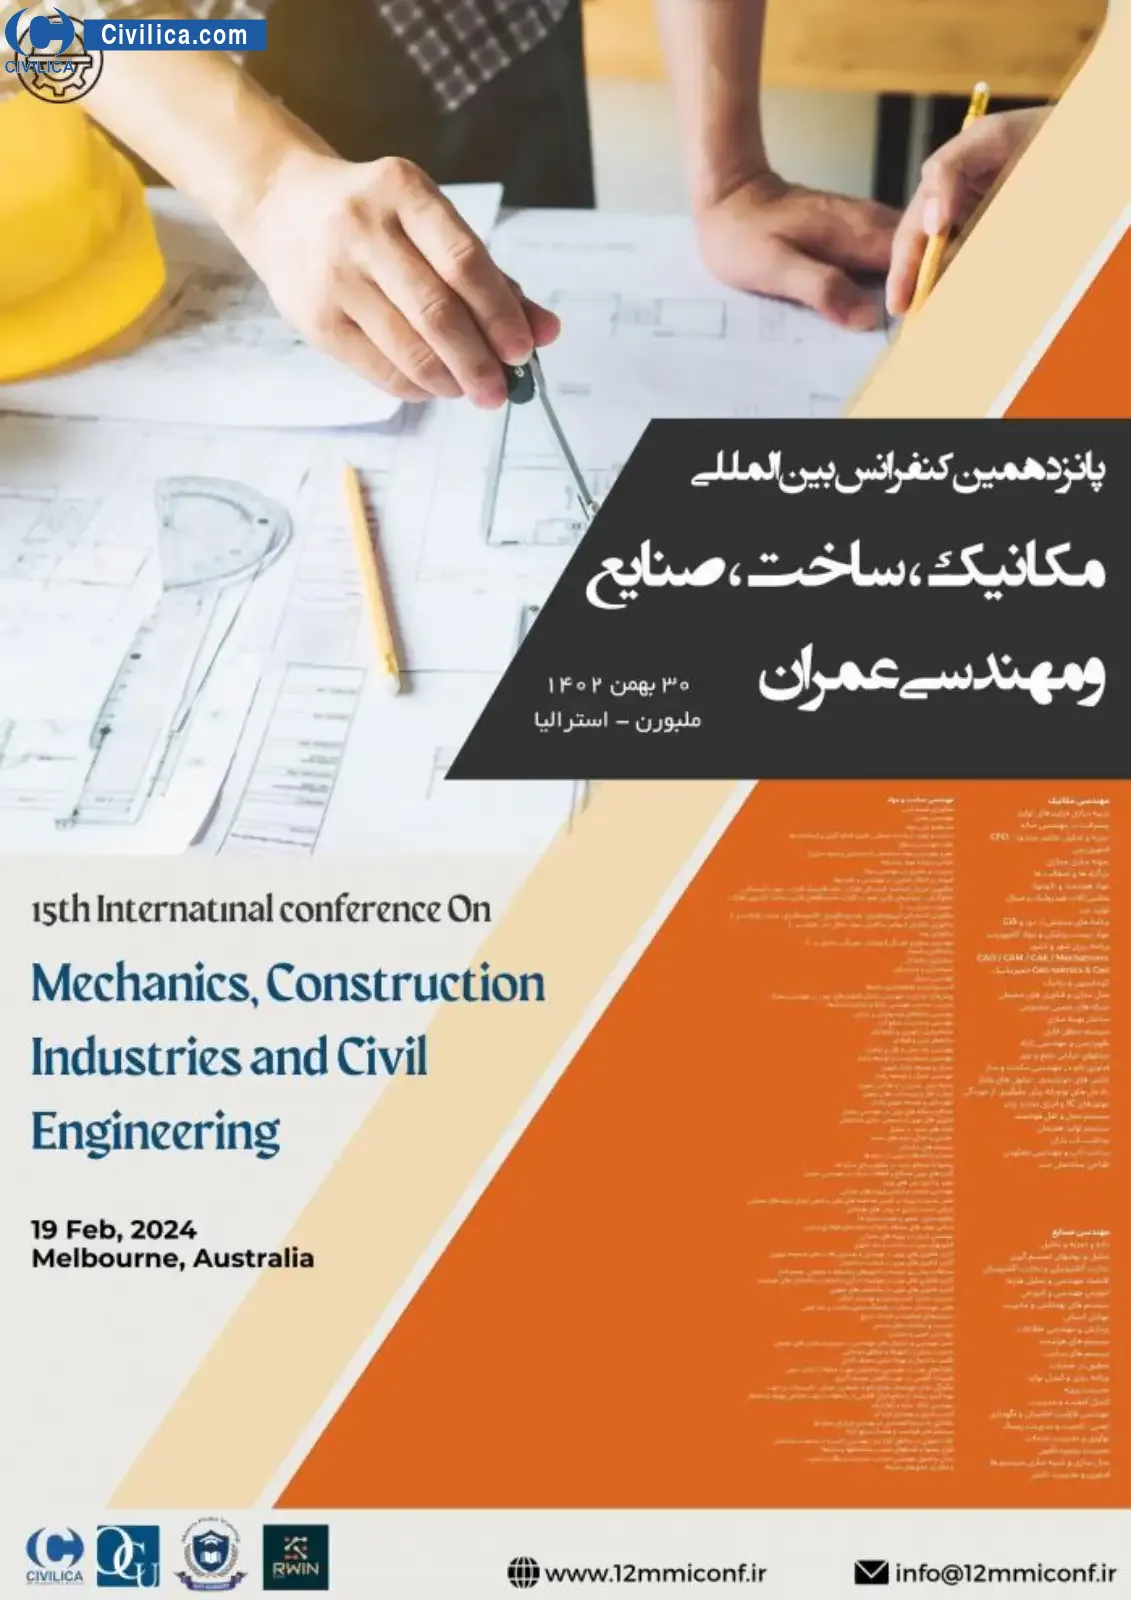 فراخوان مقاله پانزدهمین کنفرانس بین المللی مکانیک، ساخت، صنایع و مهندسی عمران